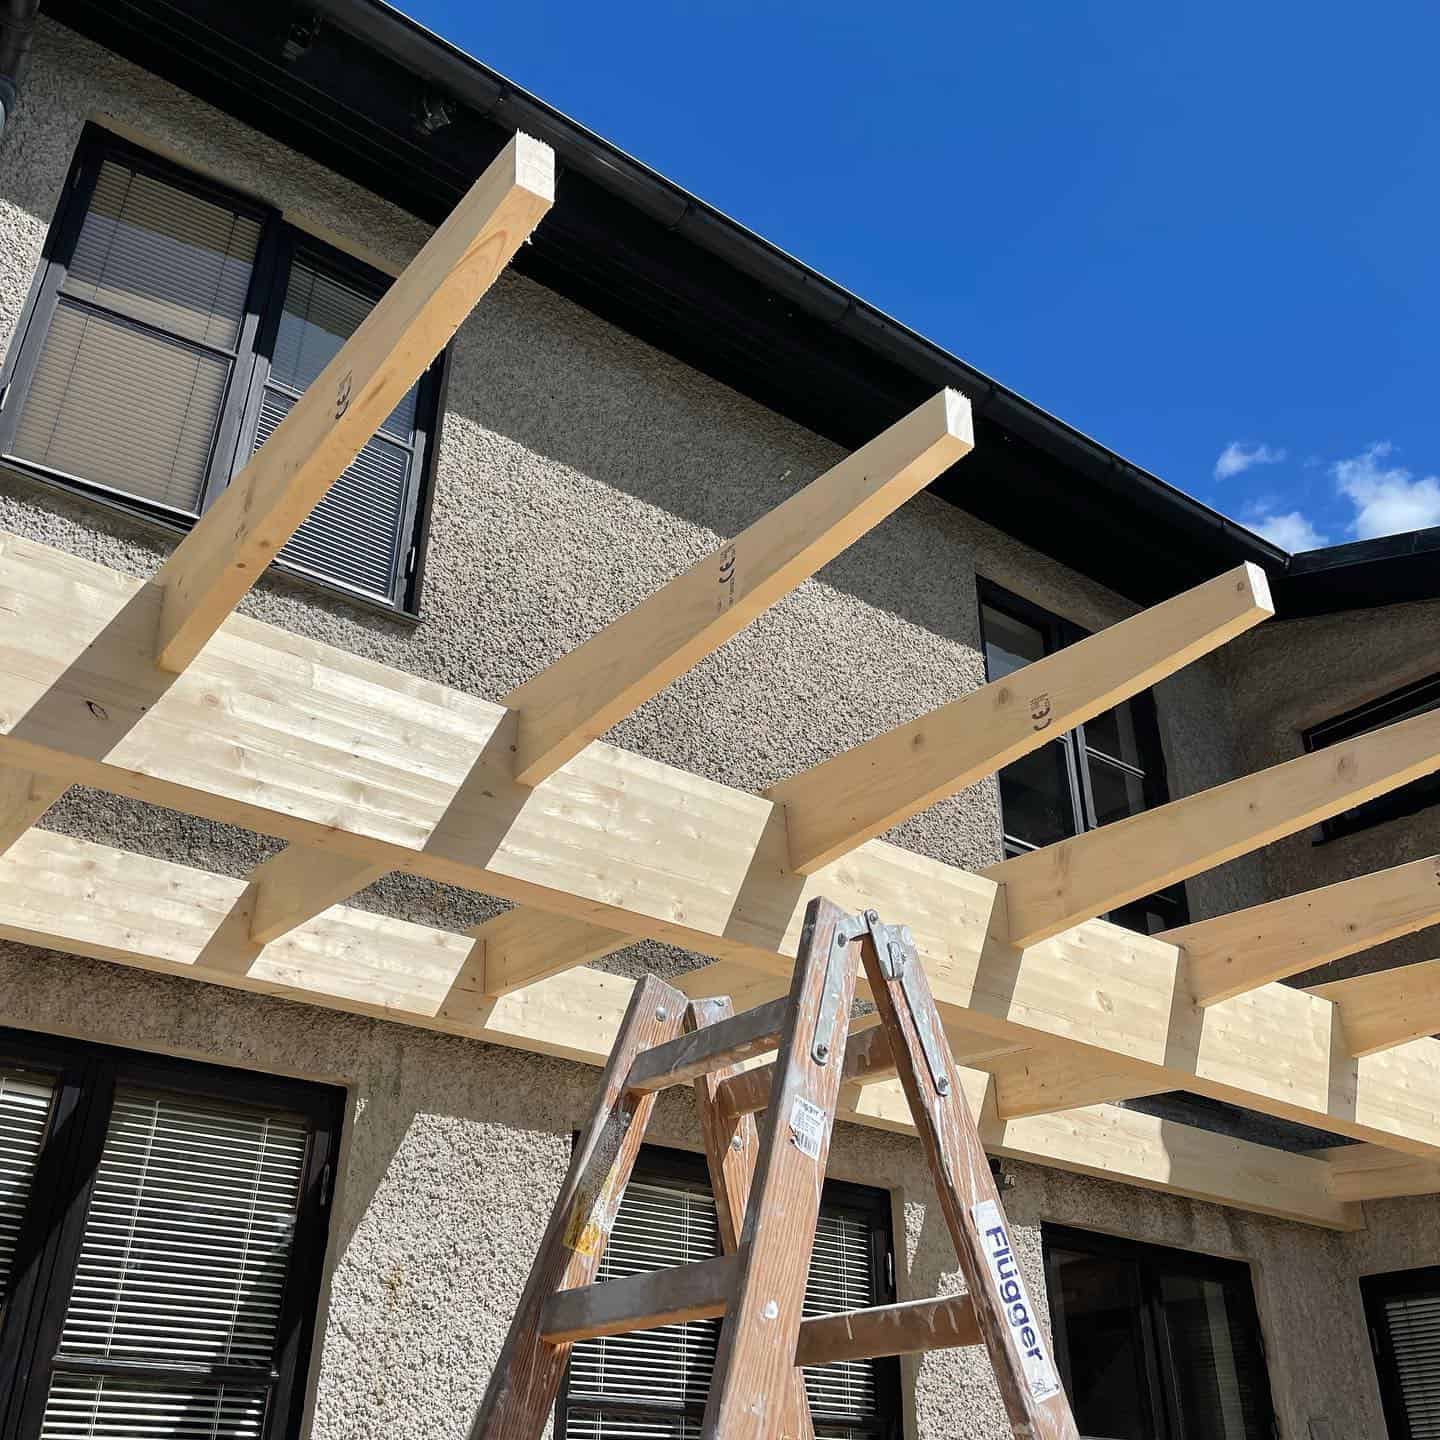 Referensjobb "Bygger en balkong" utfört av Backamöllan Byggnads Aktiebolag